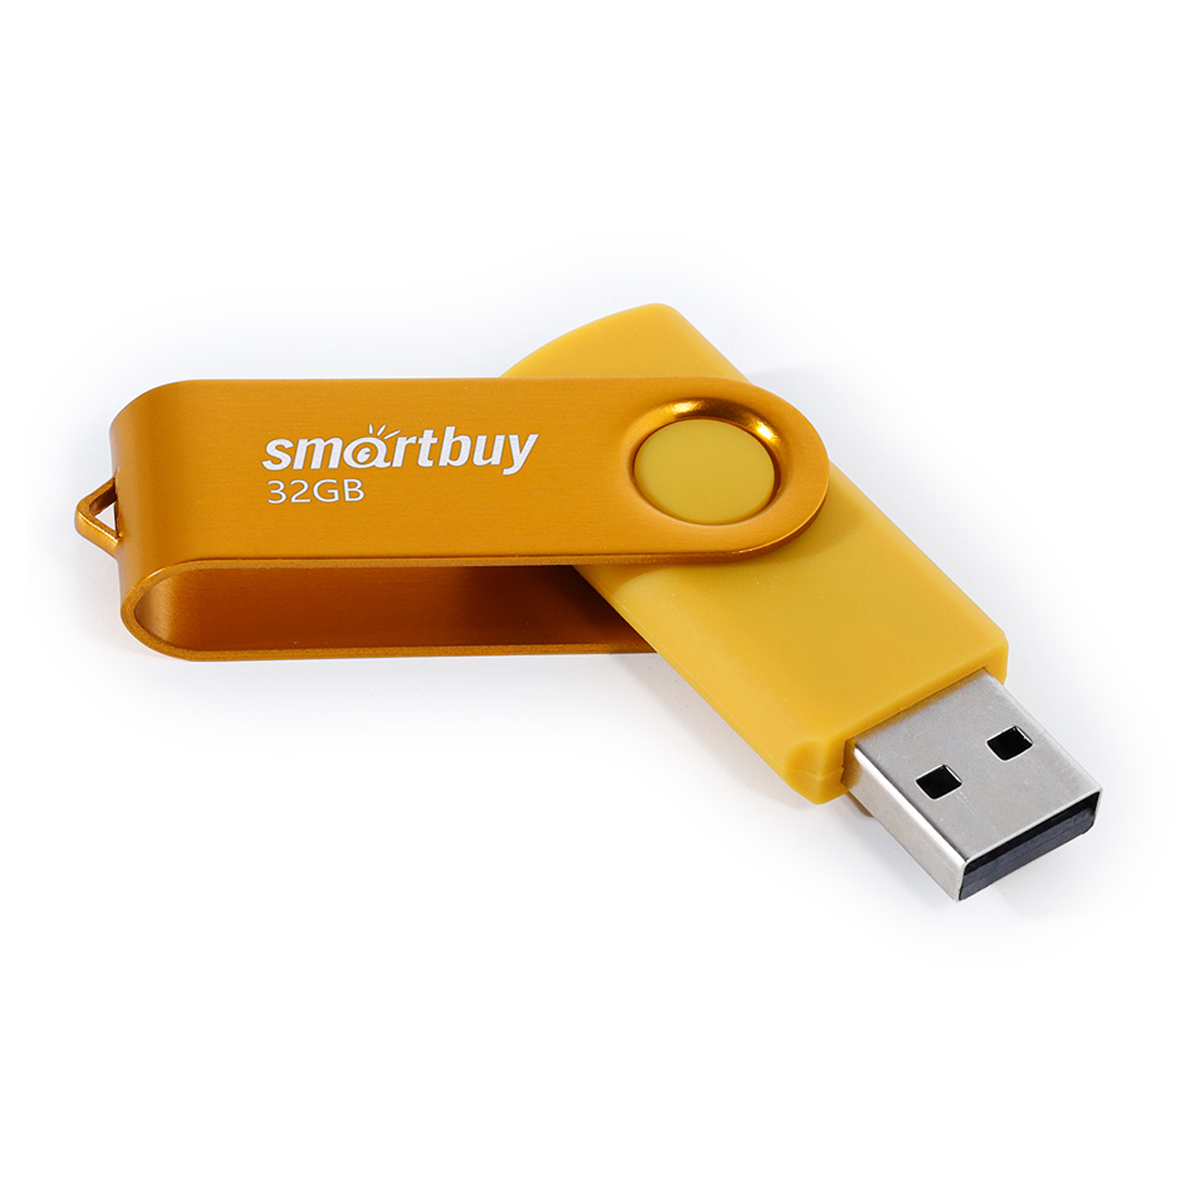  Smart Buy "Twist" 32GB, USB 2.0 Flash Drive 